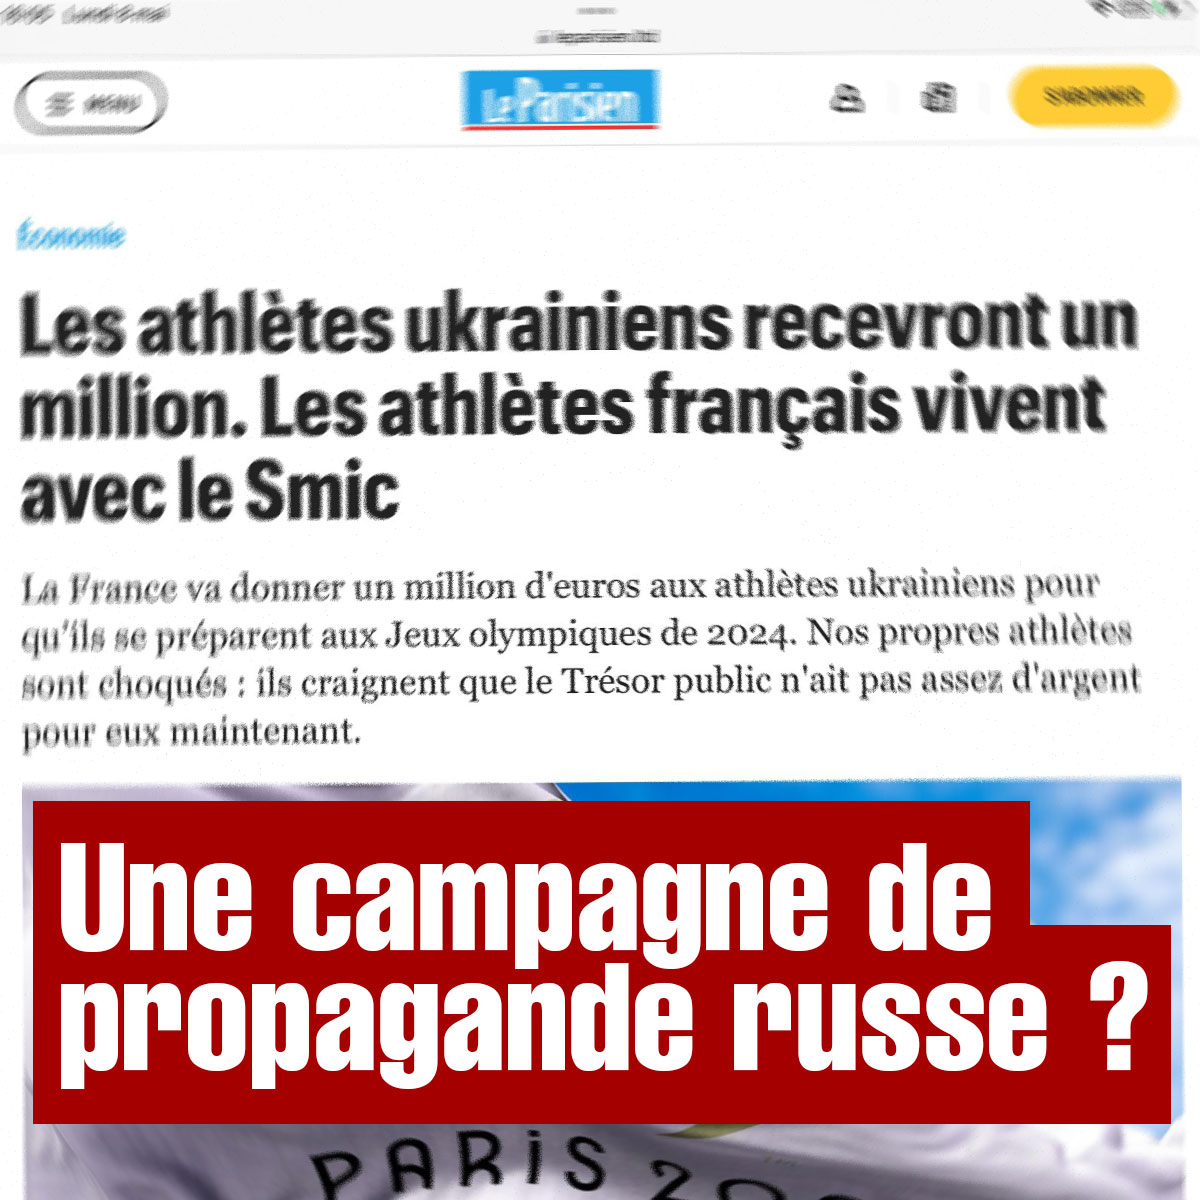 image faux parisien propagande russe